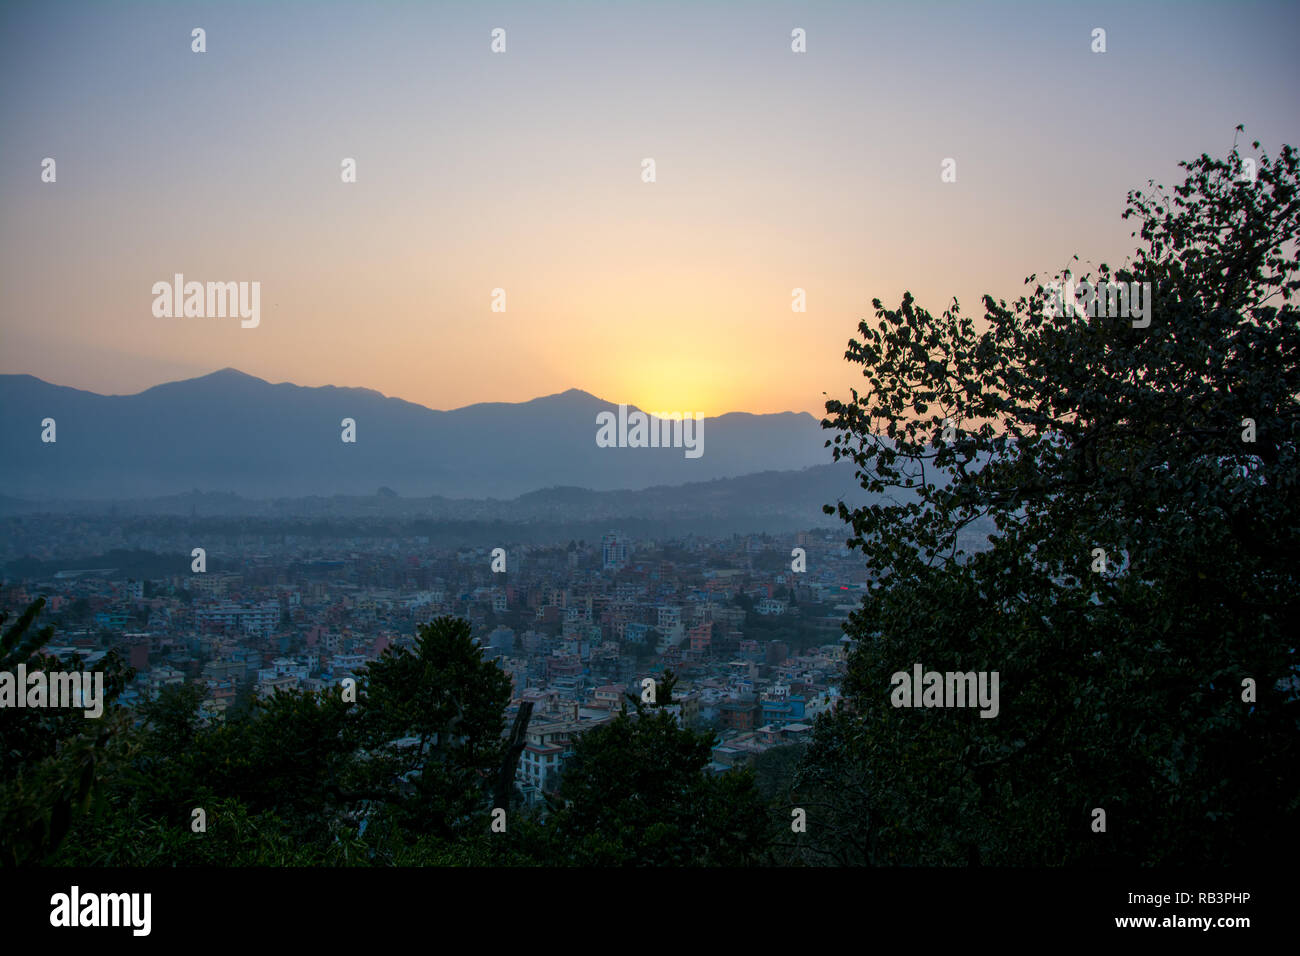 Le romantique coucher de soleil à partir de Swayambhunath Stupa de Kathmandu. Prises au Népal, janvier 2019. Banque D'Images